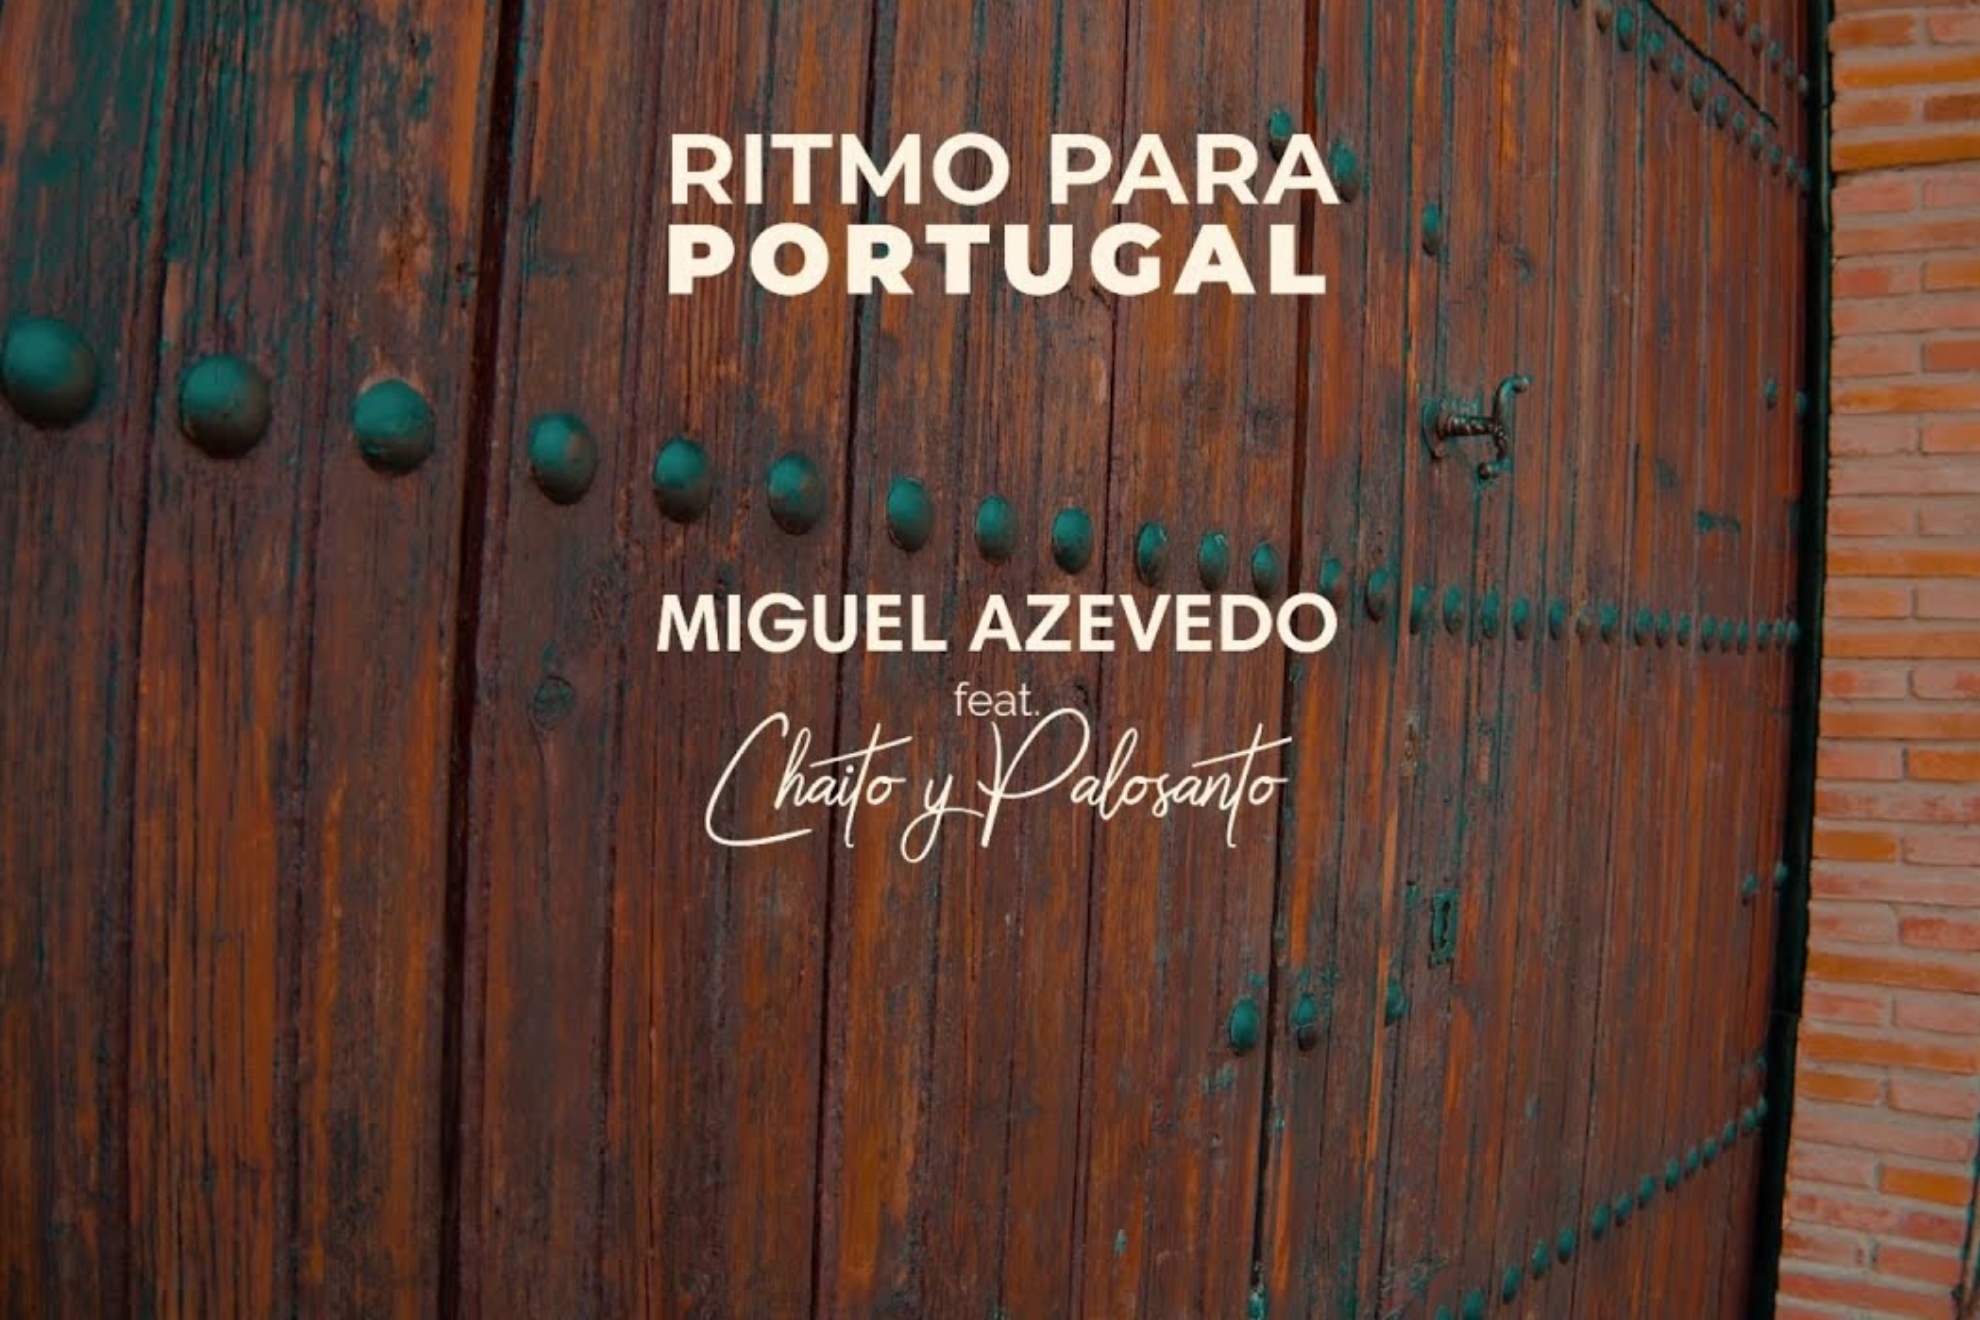 Chaito & Palosanto lanza Ritmo para Portugal junto a Miguel Azevedo